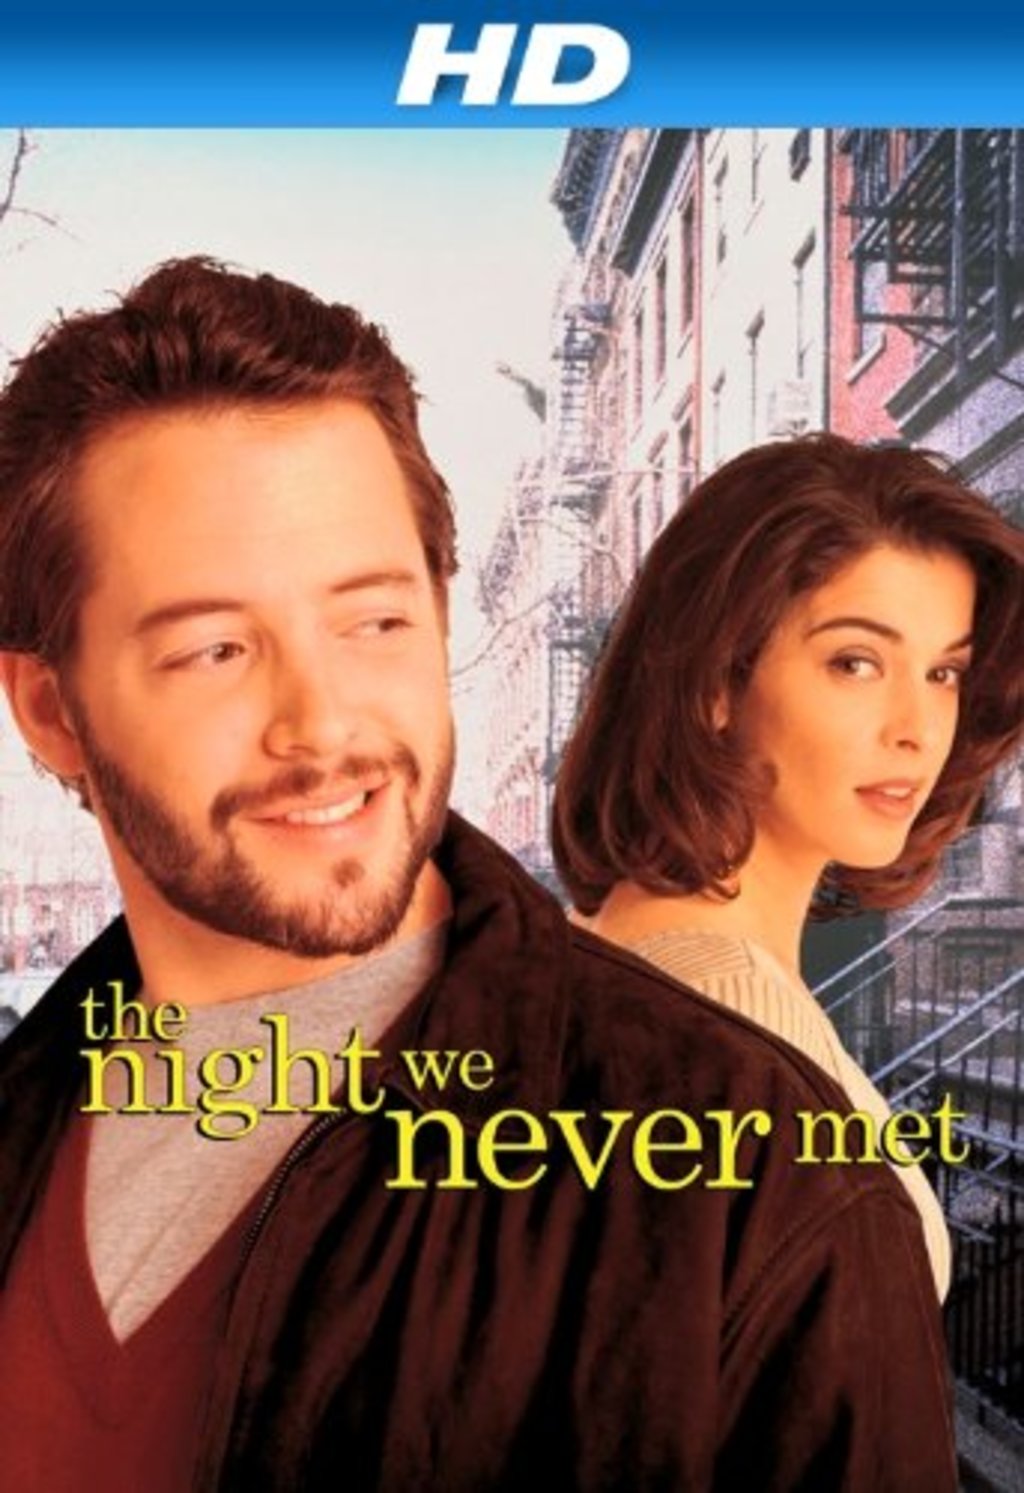 Watch The Night We Never Met on Netflix Today! | NetflixMovies.com1024 x 1493